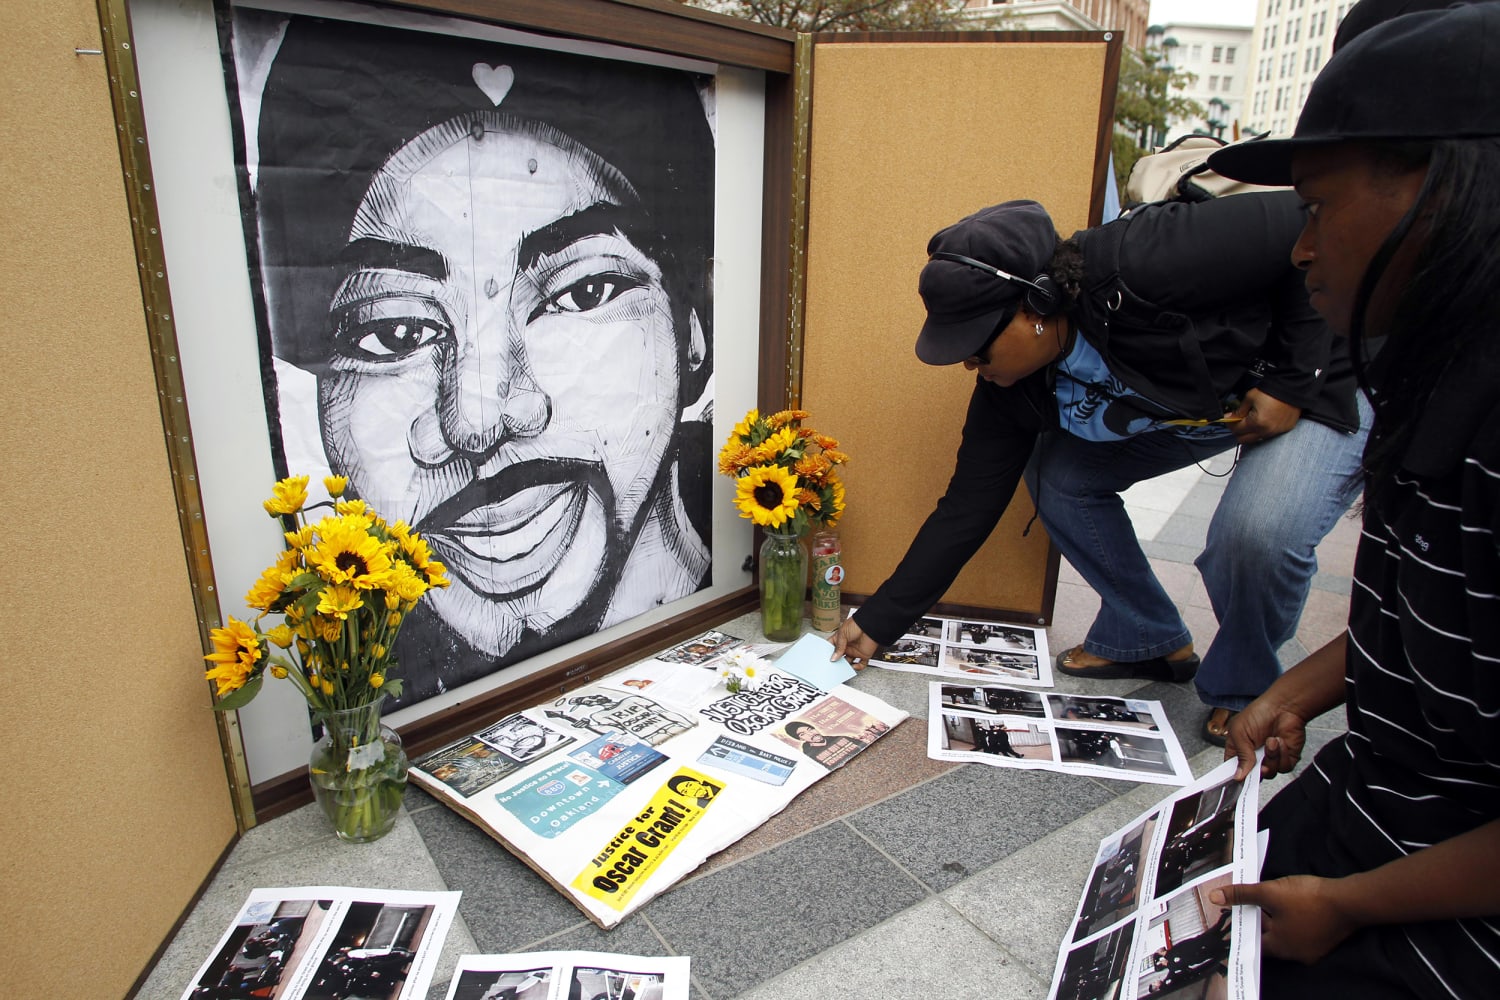 Black man shot dead in Oakland